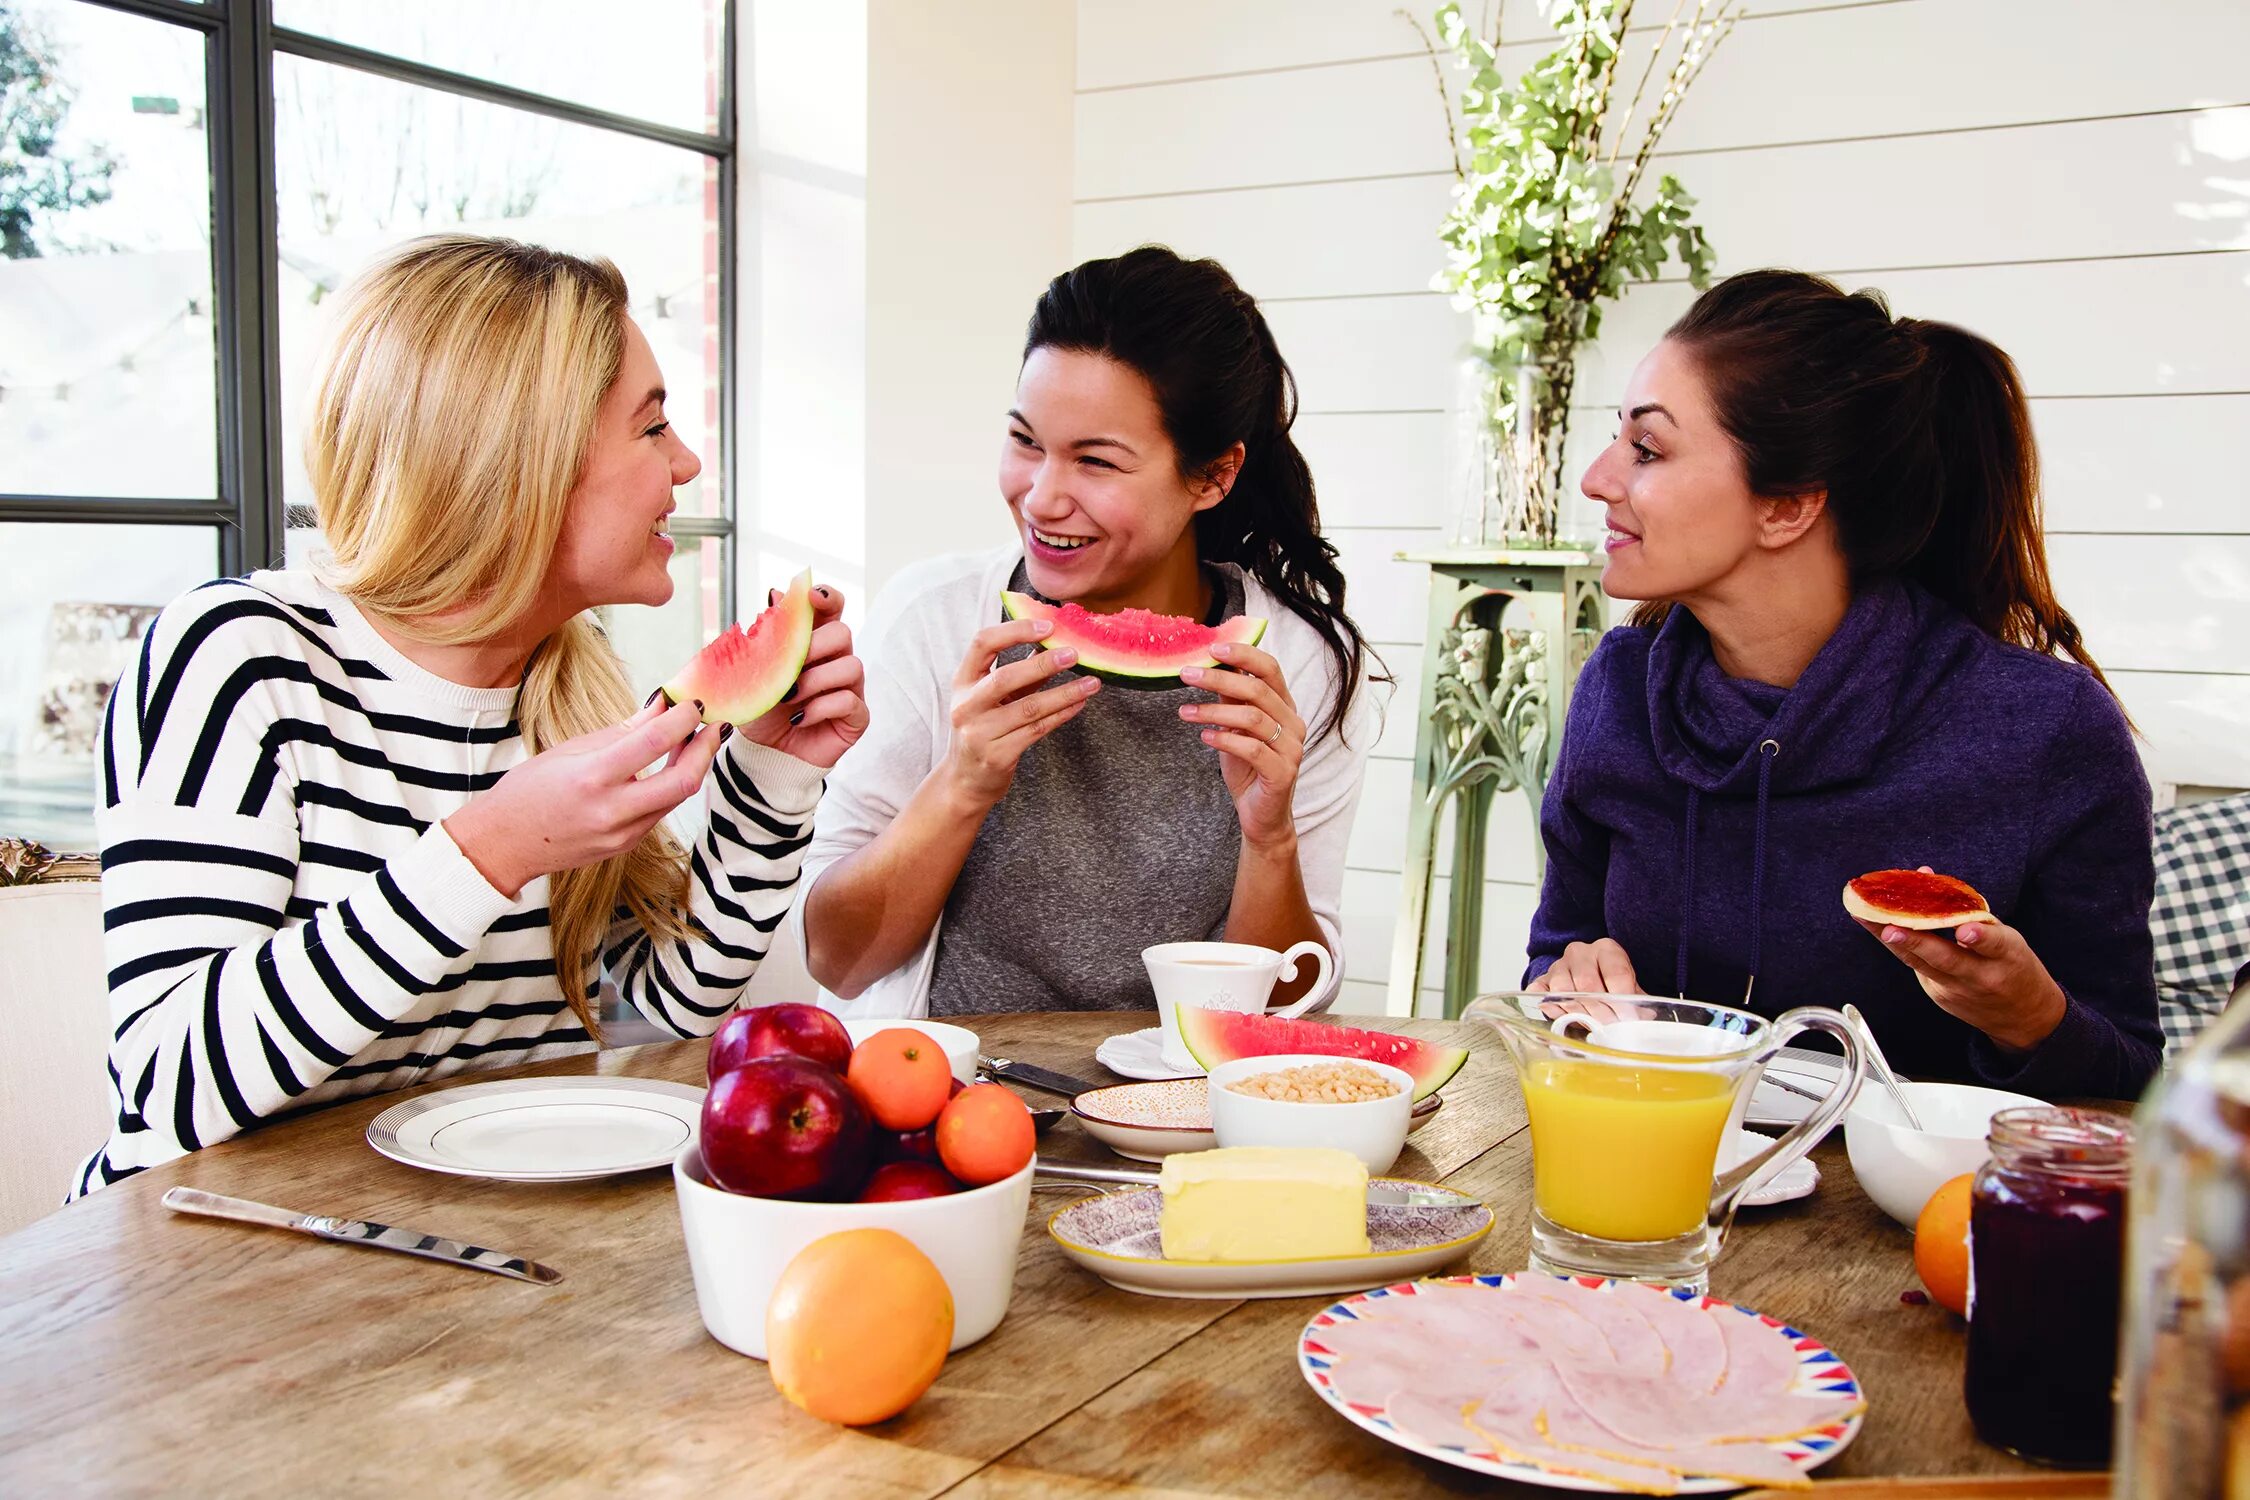 Lifestyle это. Завтрак вместе. Завтракать вместе с подругой. Картинки для карты желаний совместный завтрак. Healthy Lifestyle people.